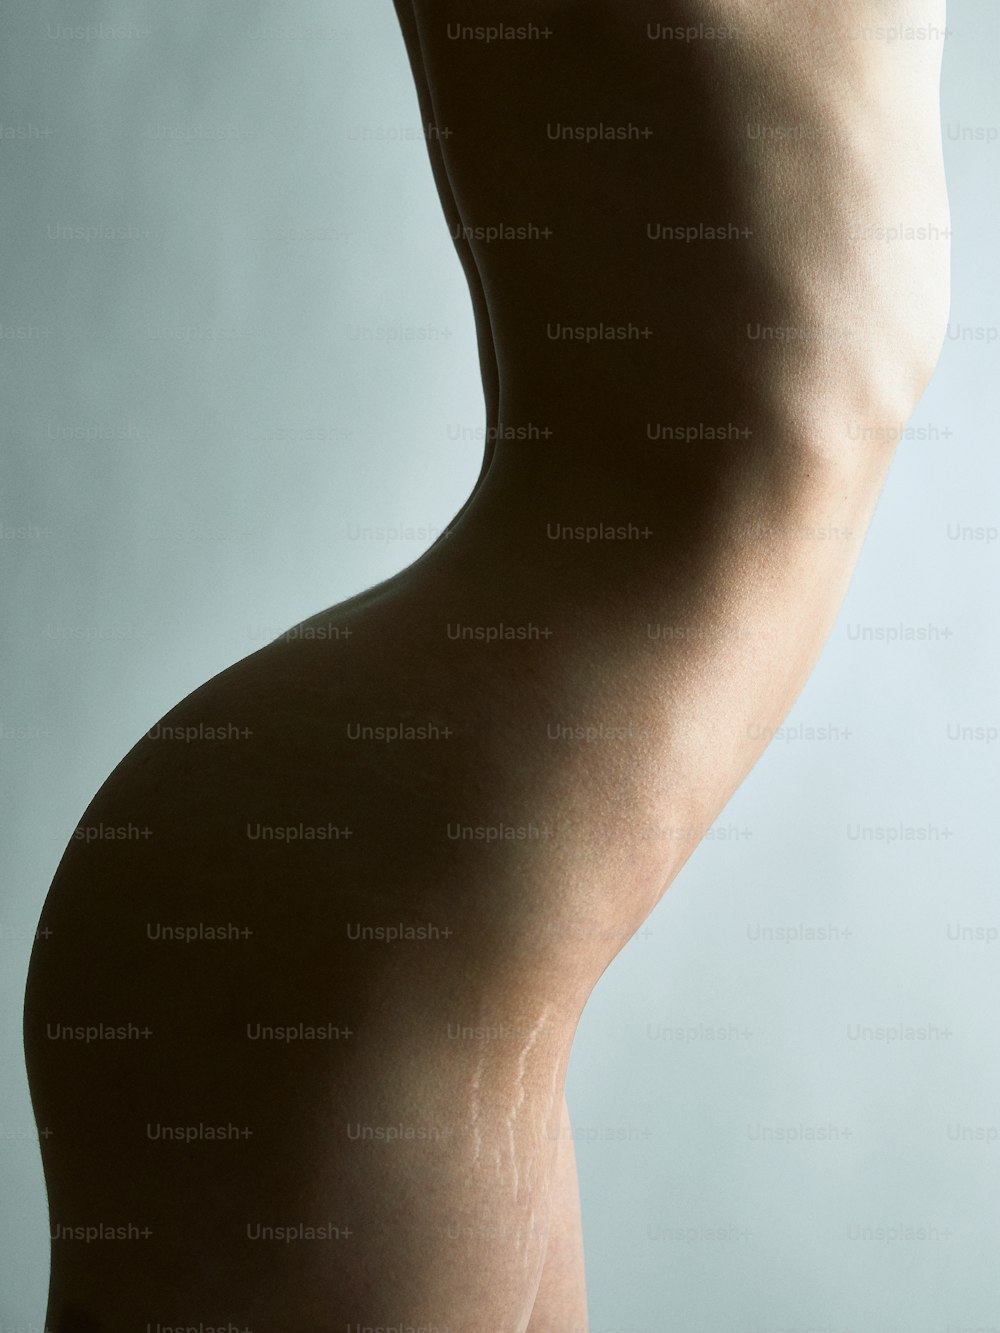 Le corps nu d’une femme est représenté sur un fond gris